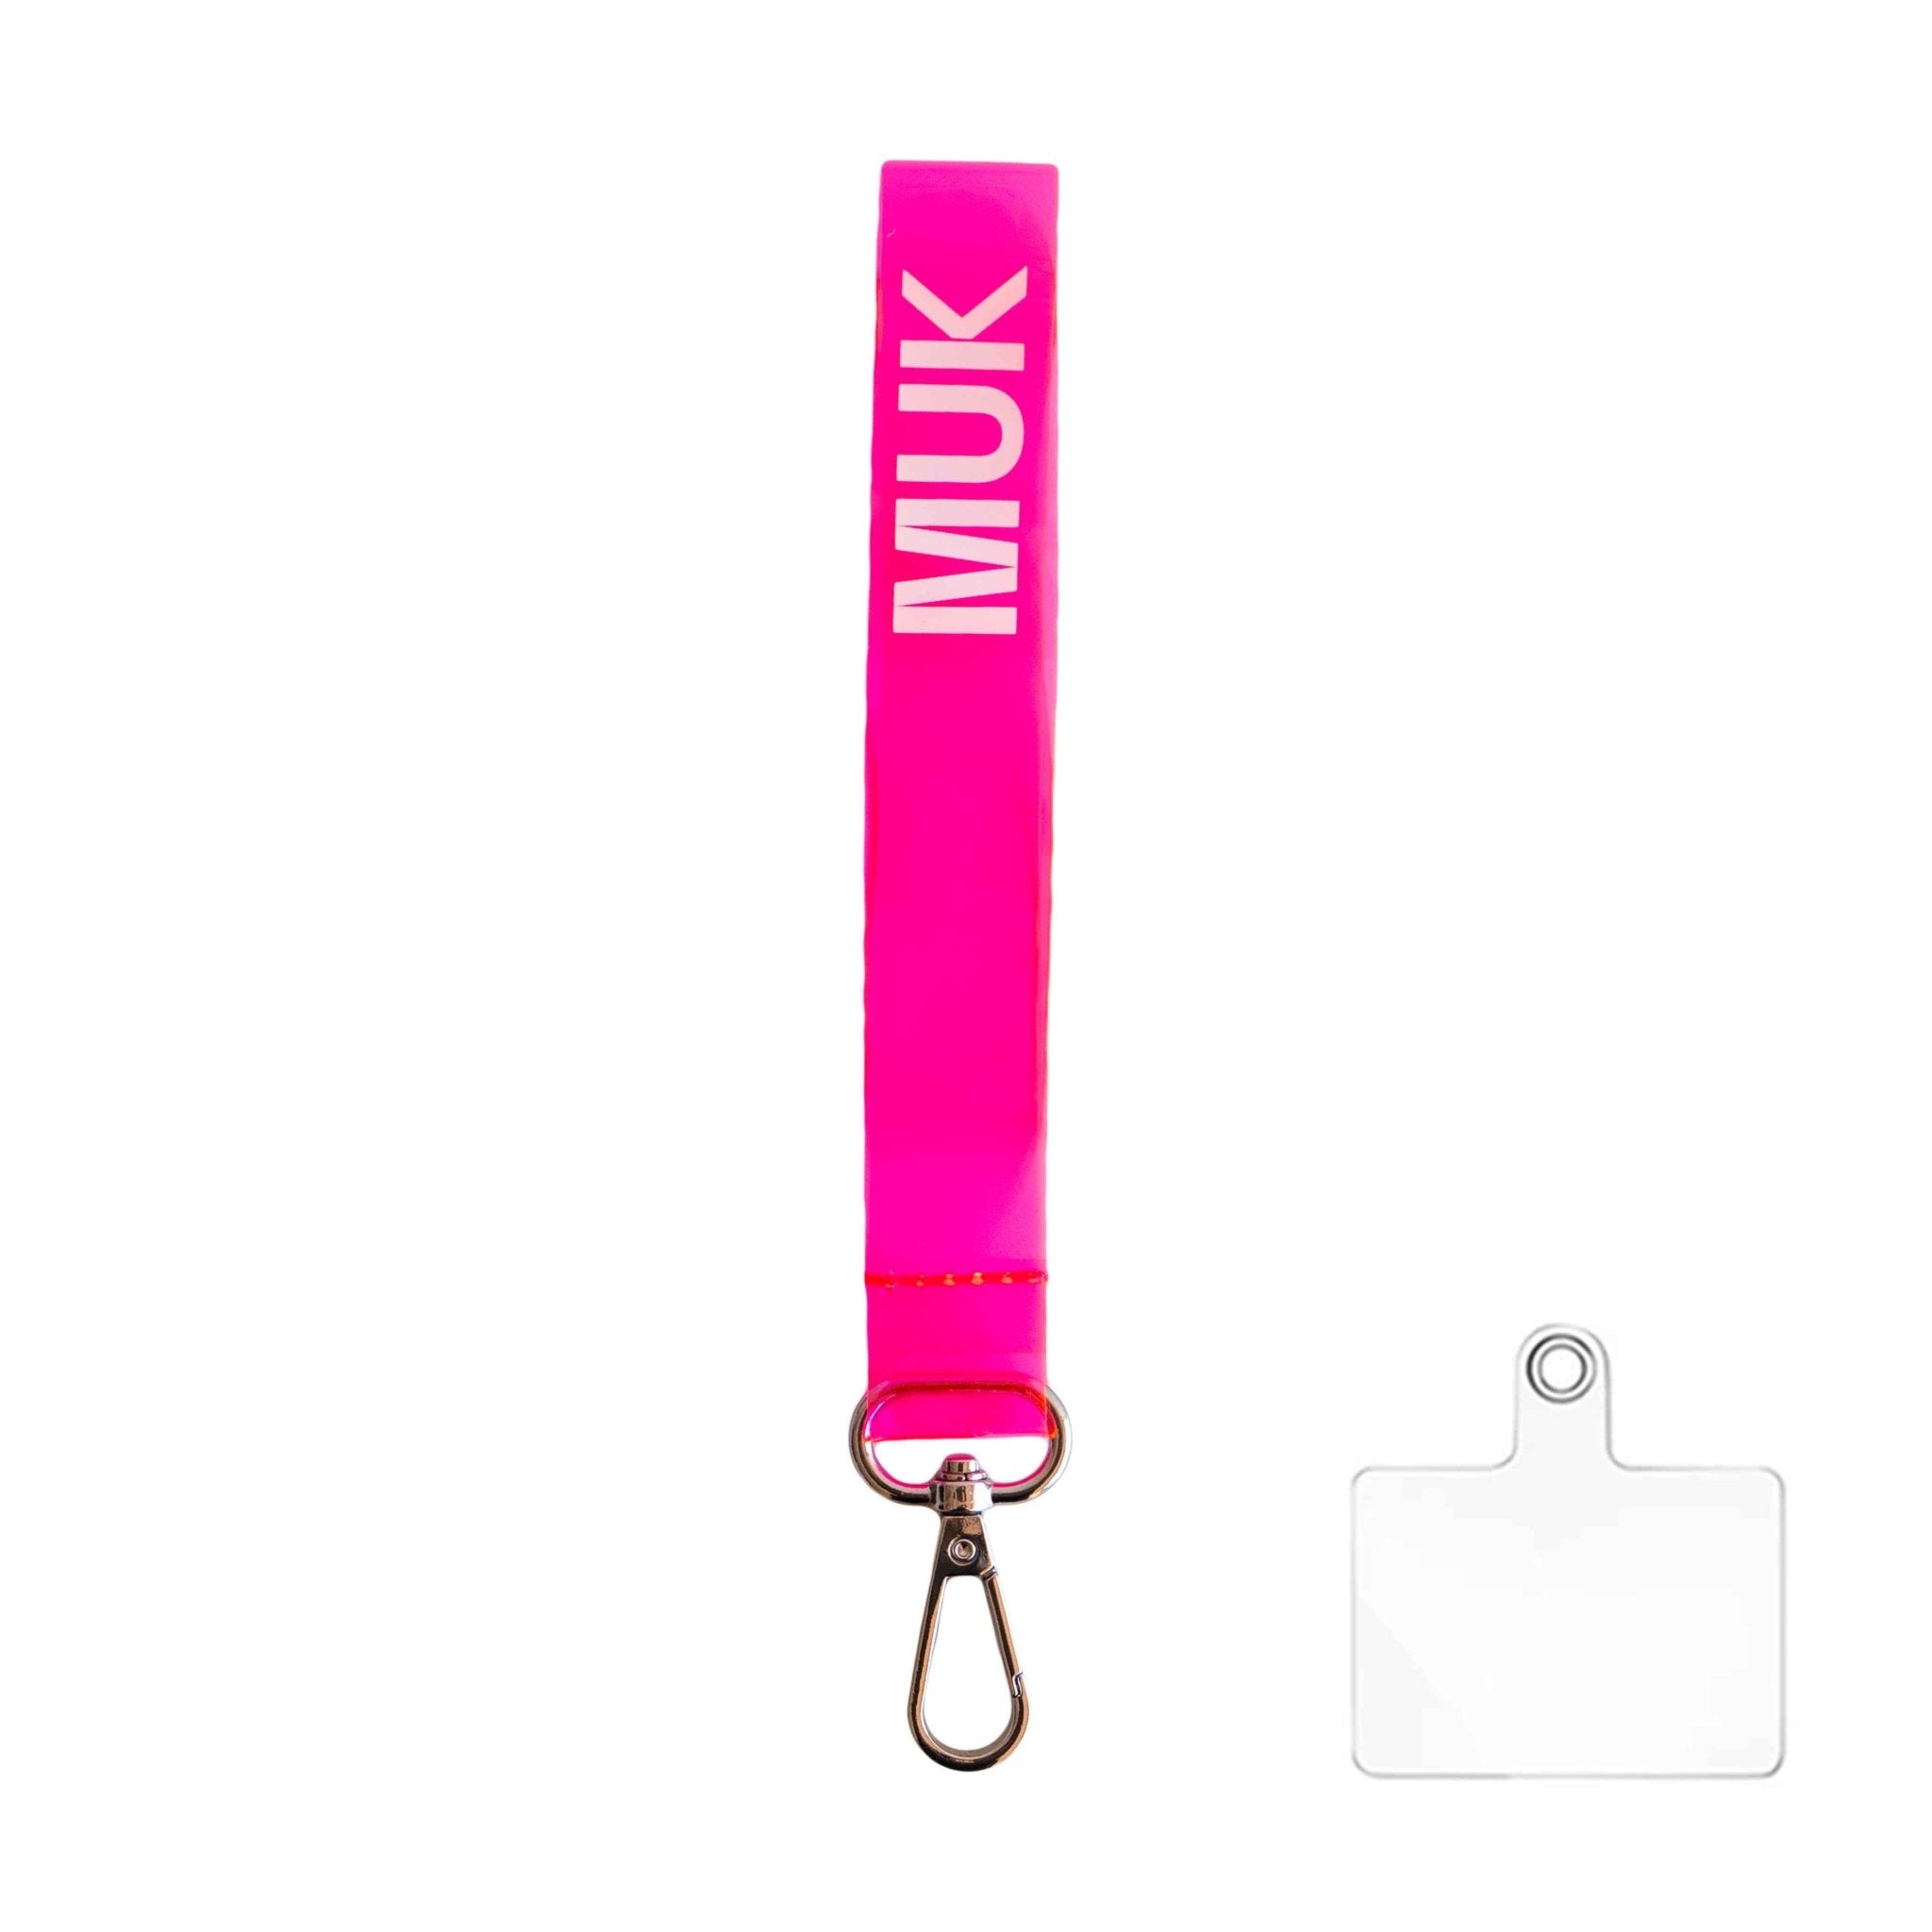 Cuerda semitransparente de color rosa flúor con la opción de personalización y el logo de Muk. Dispone de un mosquetón para poder usar como phonestrap con el adaptador de cuerda universal (incluido), o bien, como llavero.
